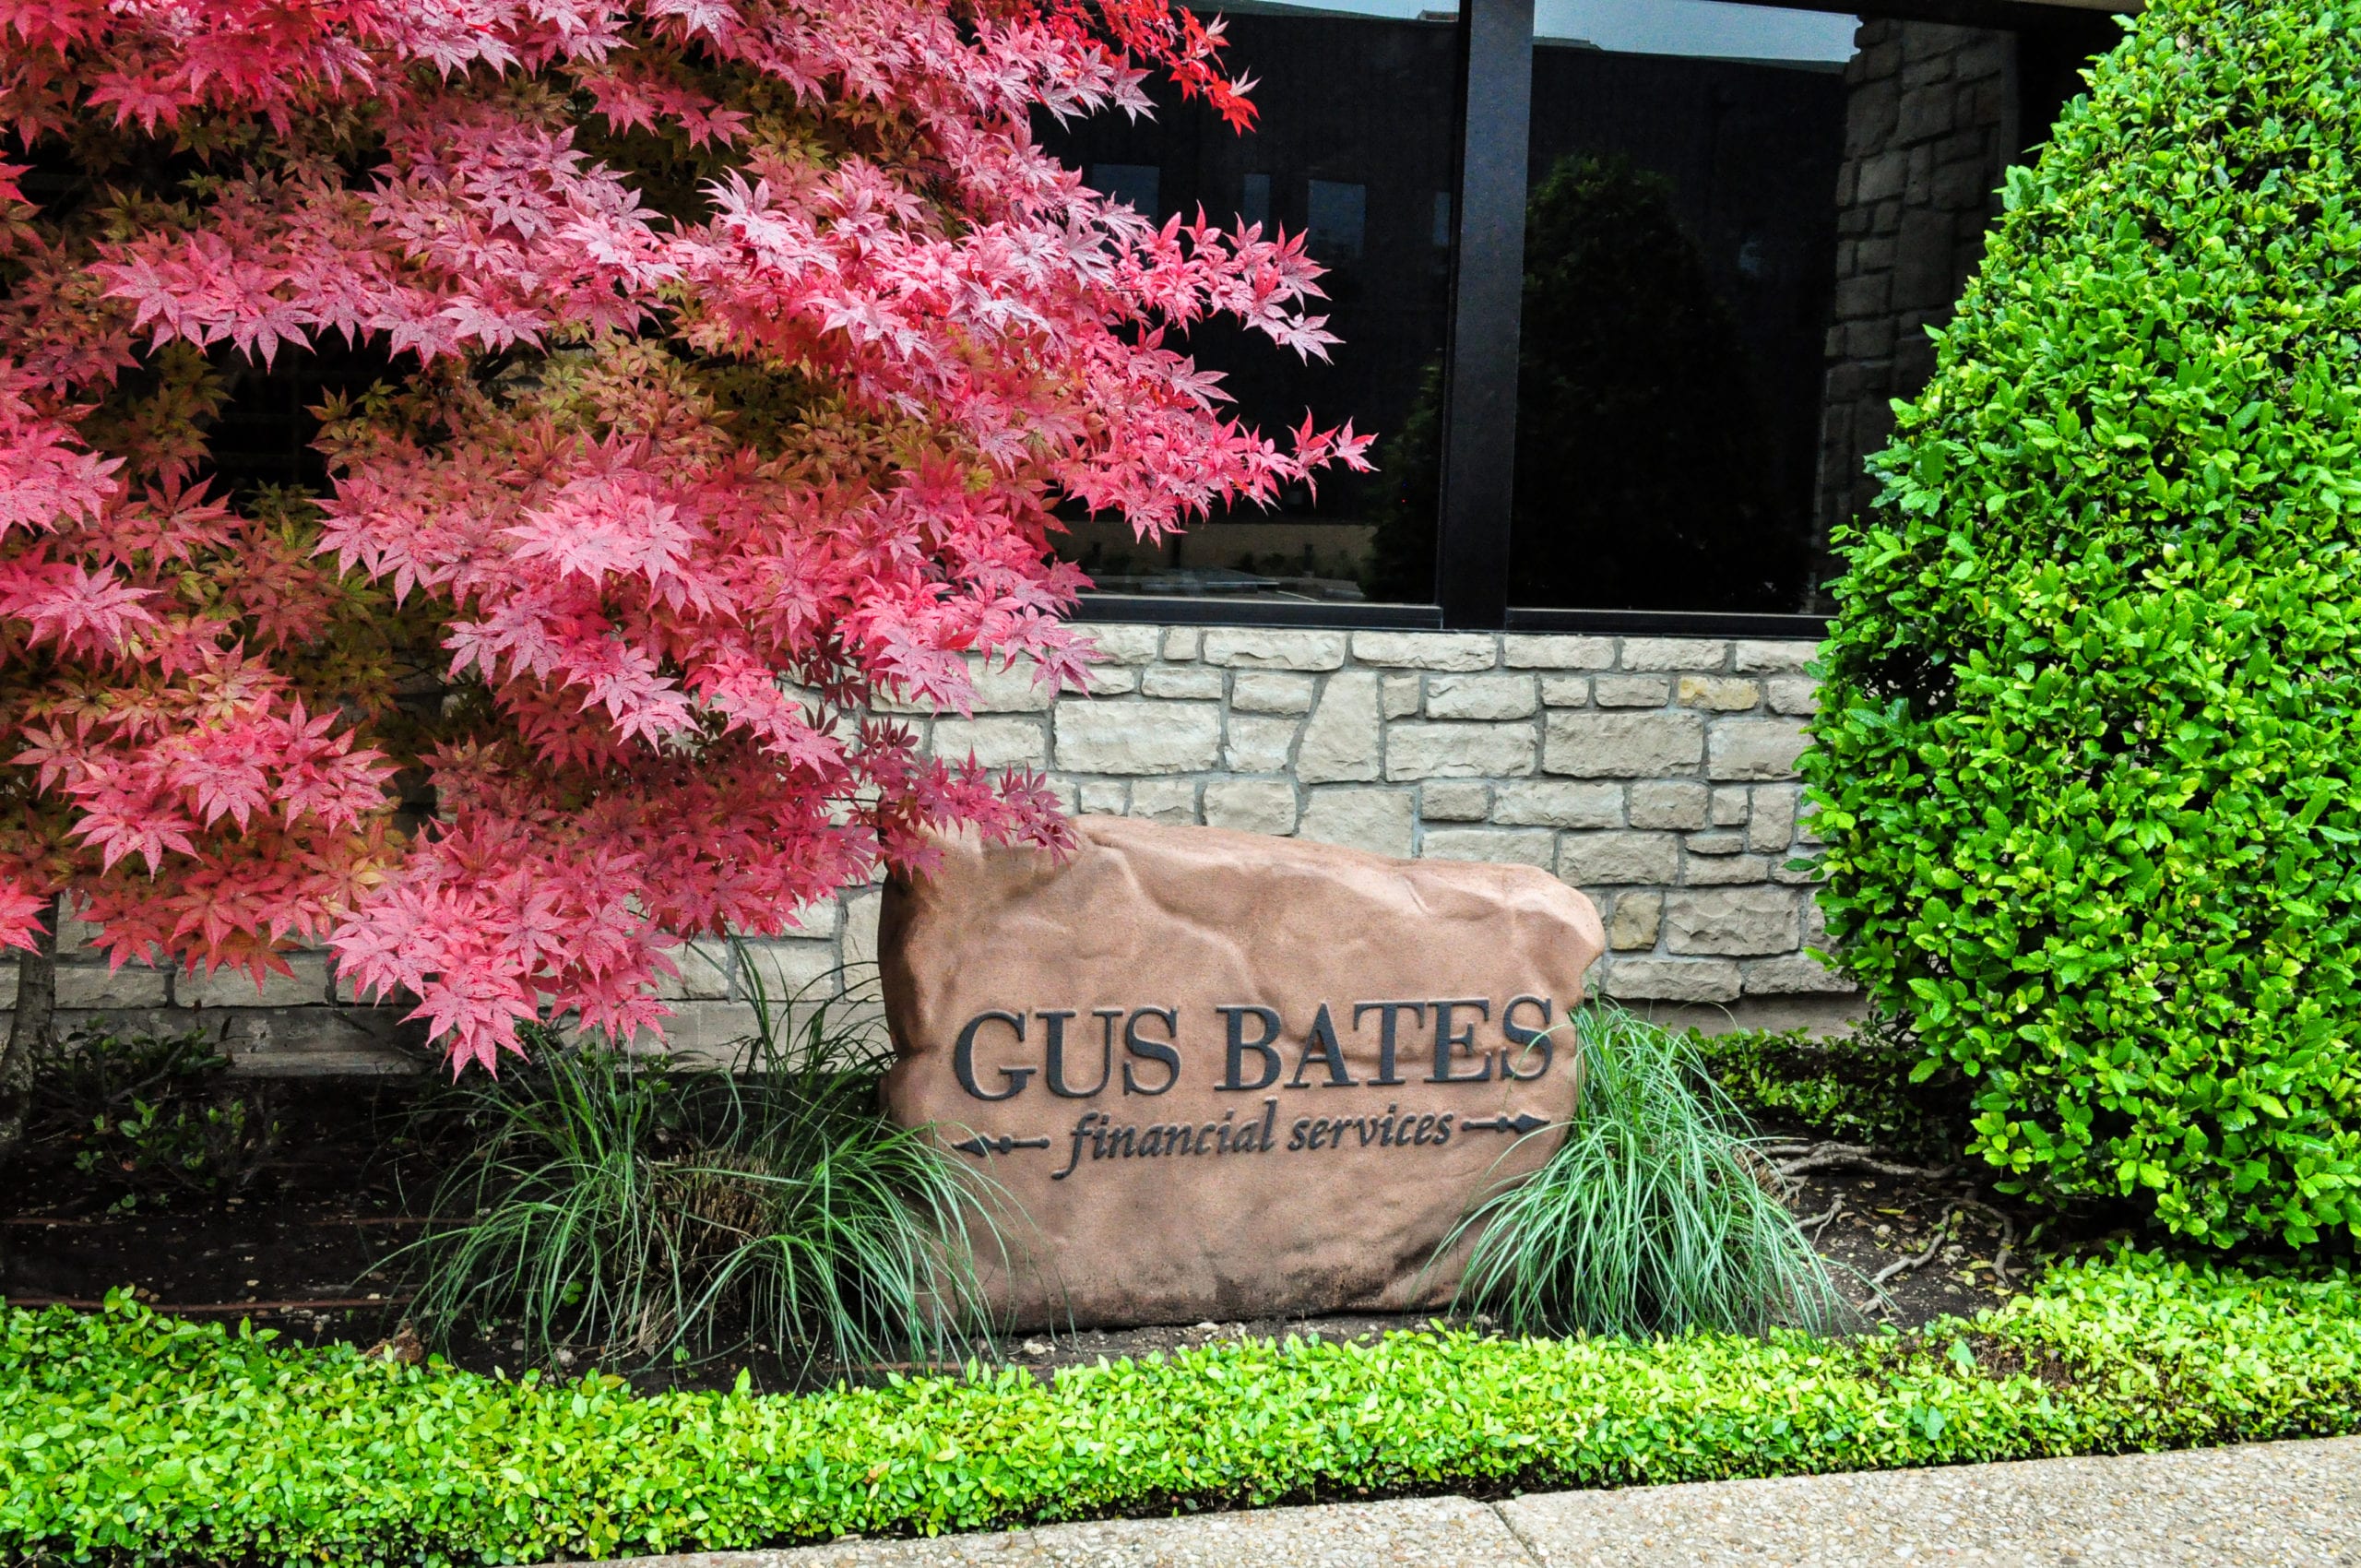 Life insurance solutions at Gus Bates Financial